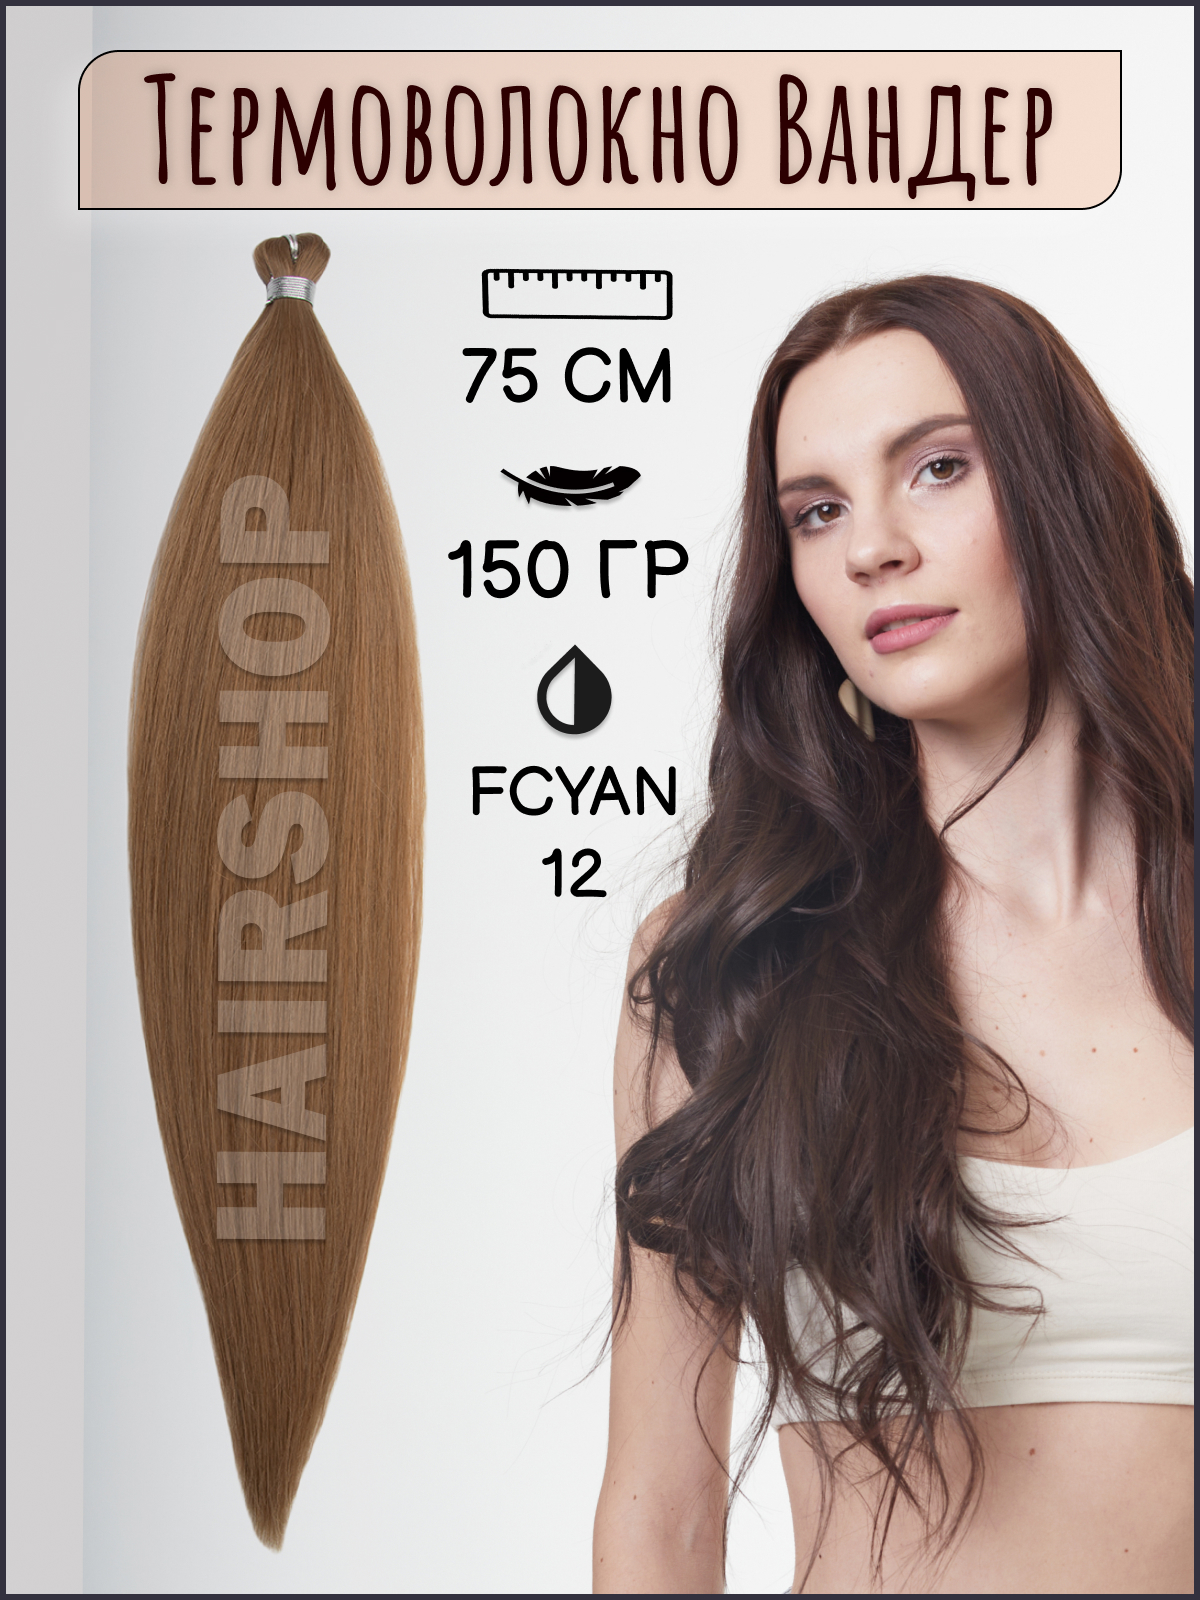 Термоволокно для наращивания Hairshop Вандер FCYAN 12 150г 150см термоволокно для наращивания hairshop вандер grey 9 150г 150см